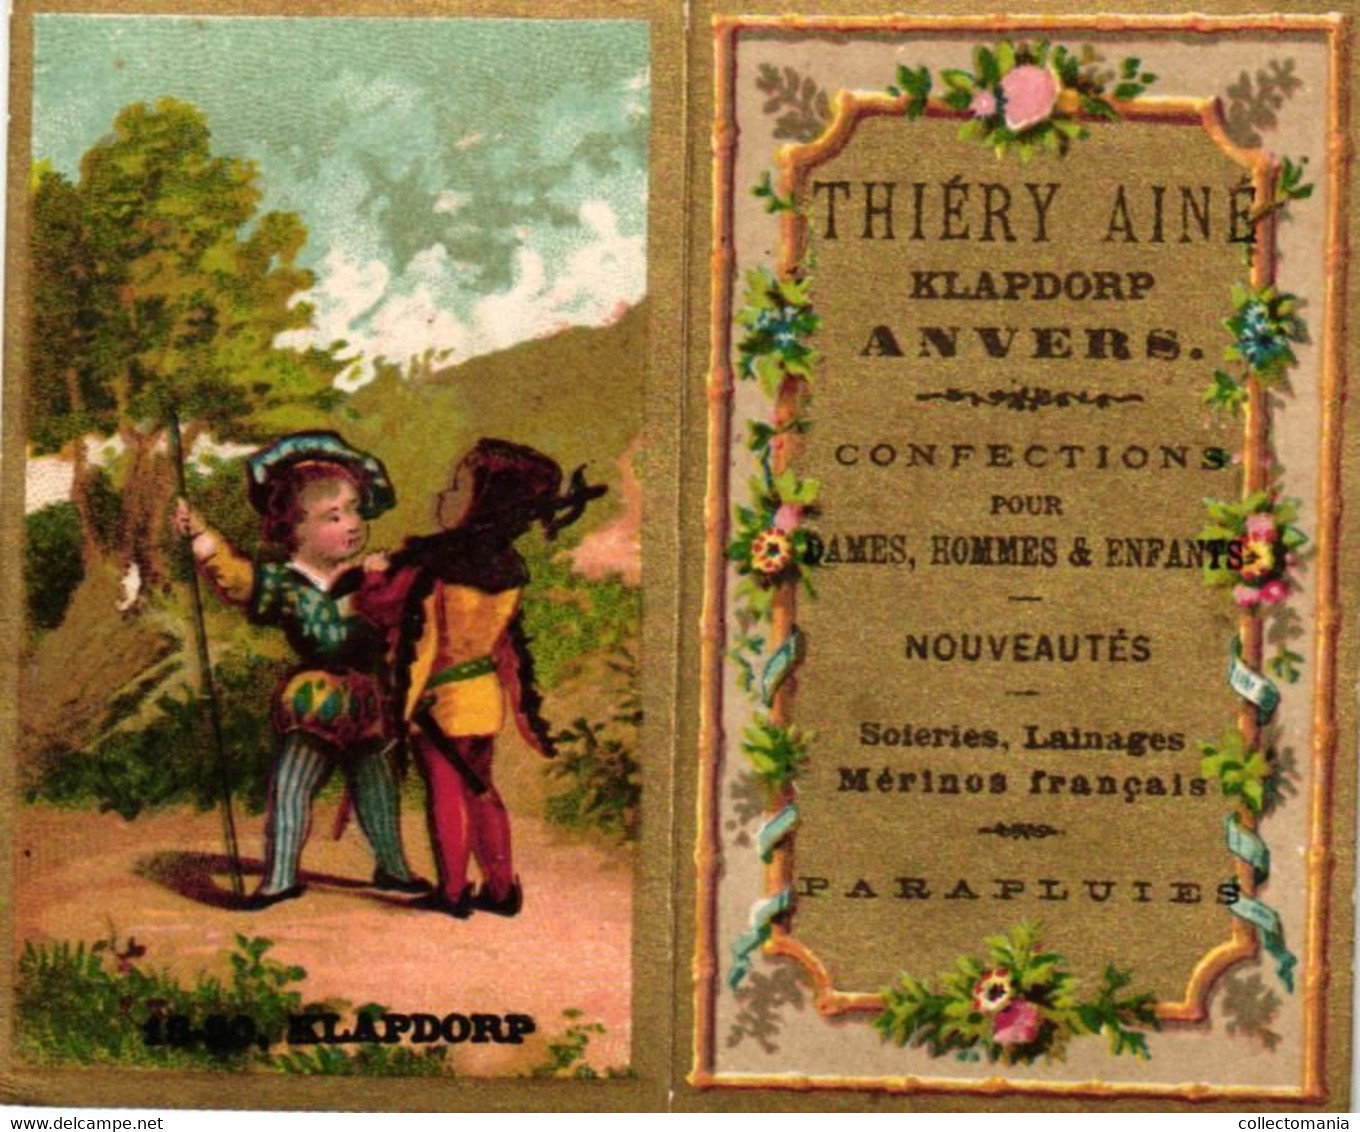 1 Calendrier  1882   Confections Nouveautés  Thiéry Ainé  Anvers Klapdorp - Klein Formaat: ...-1900